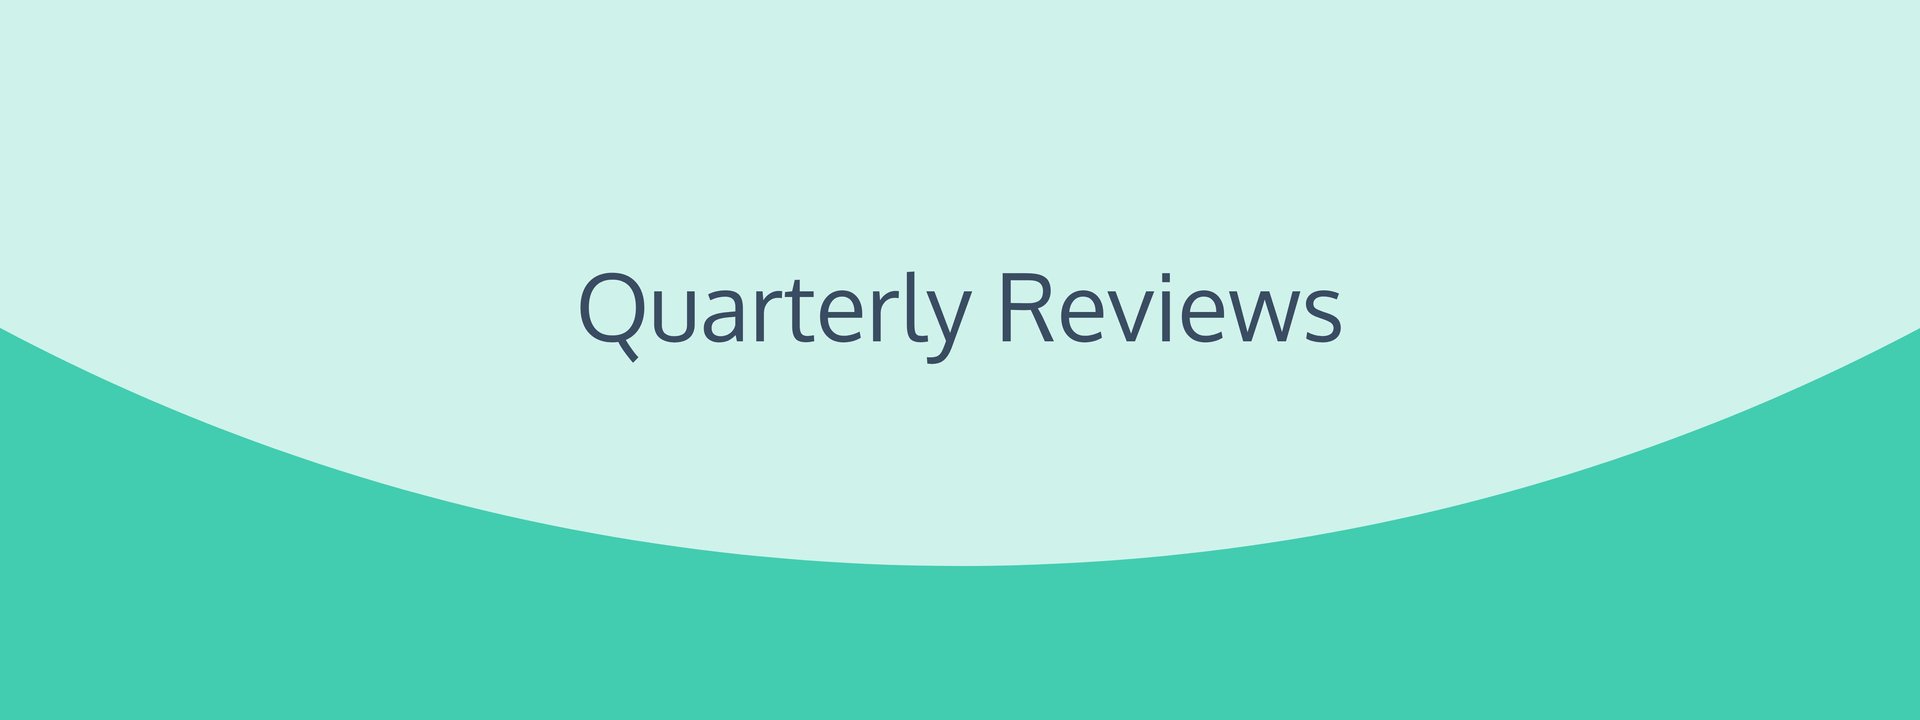 Quarterly Reviews